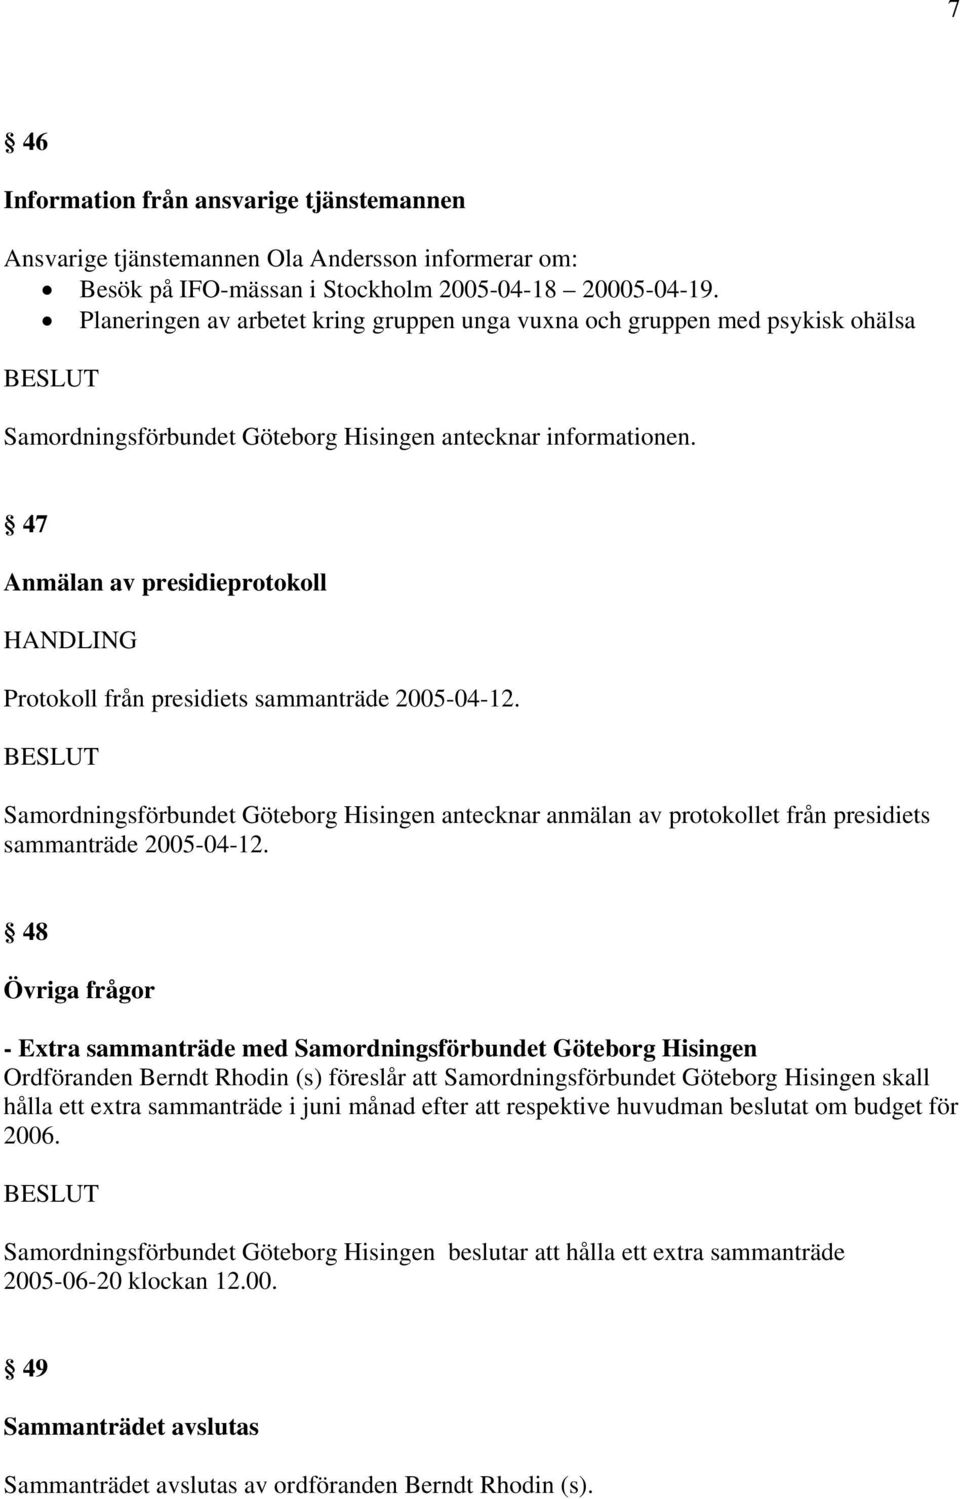 47 Anmälan av presidieprotokoll Protokoll från presidiets sammanträde 2005-04-12. Samordningsförbundet Göteborg Hisingen antecknar anmälan av protokollet från presidiets sammanträde 2005-04-12.